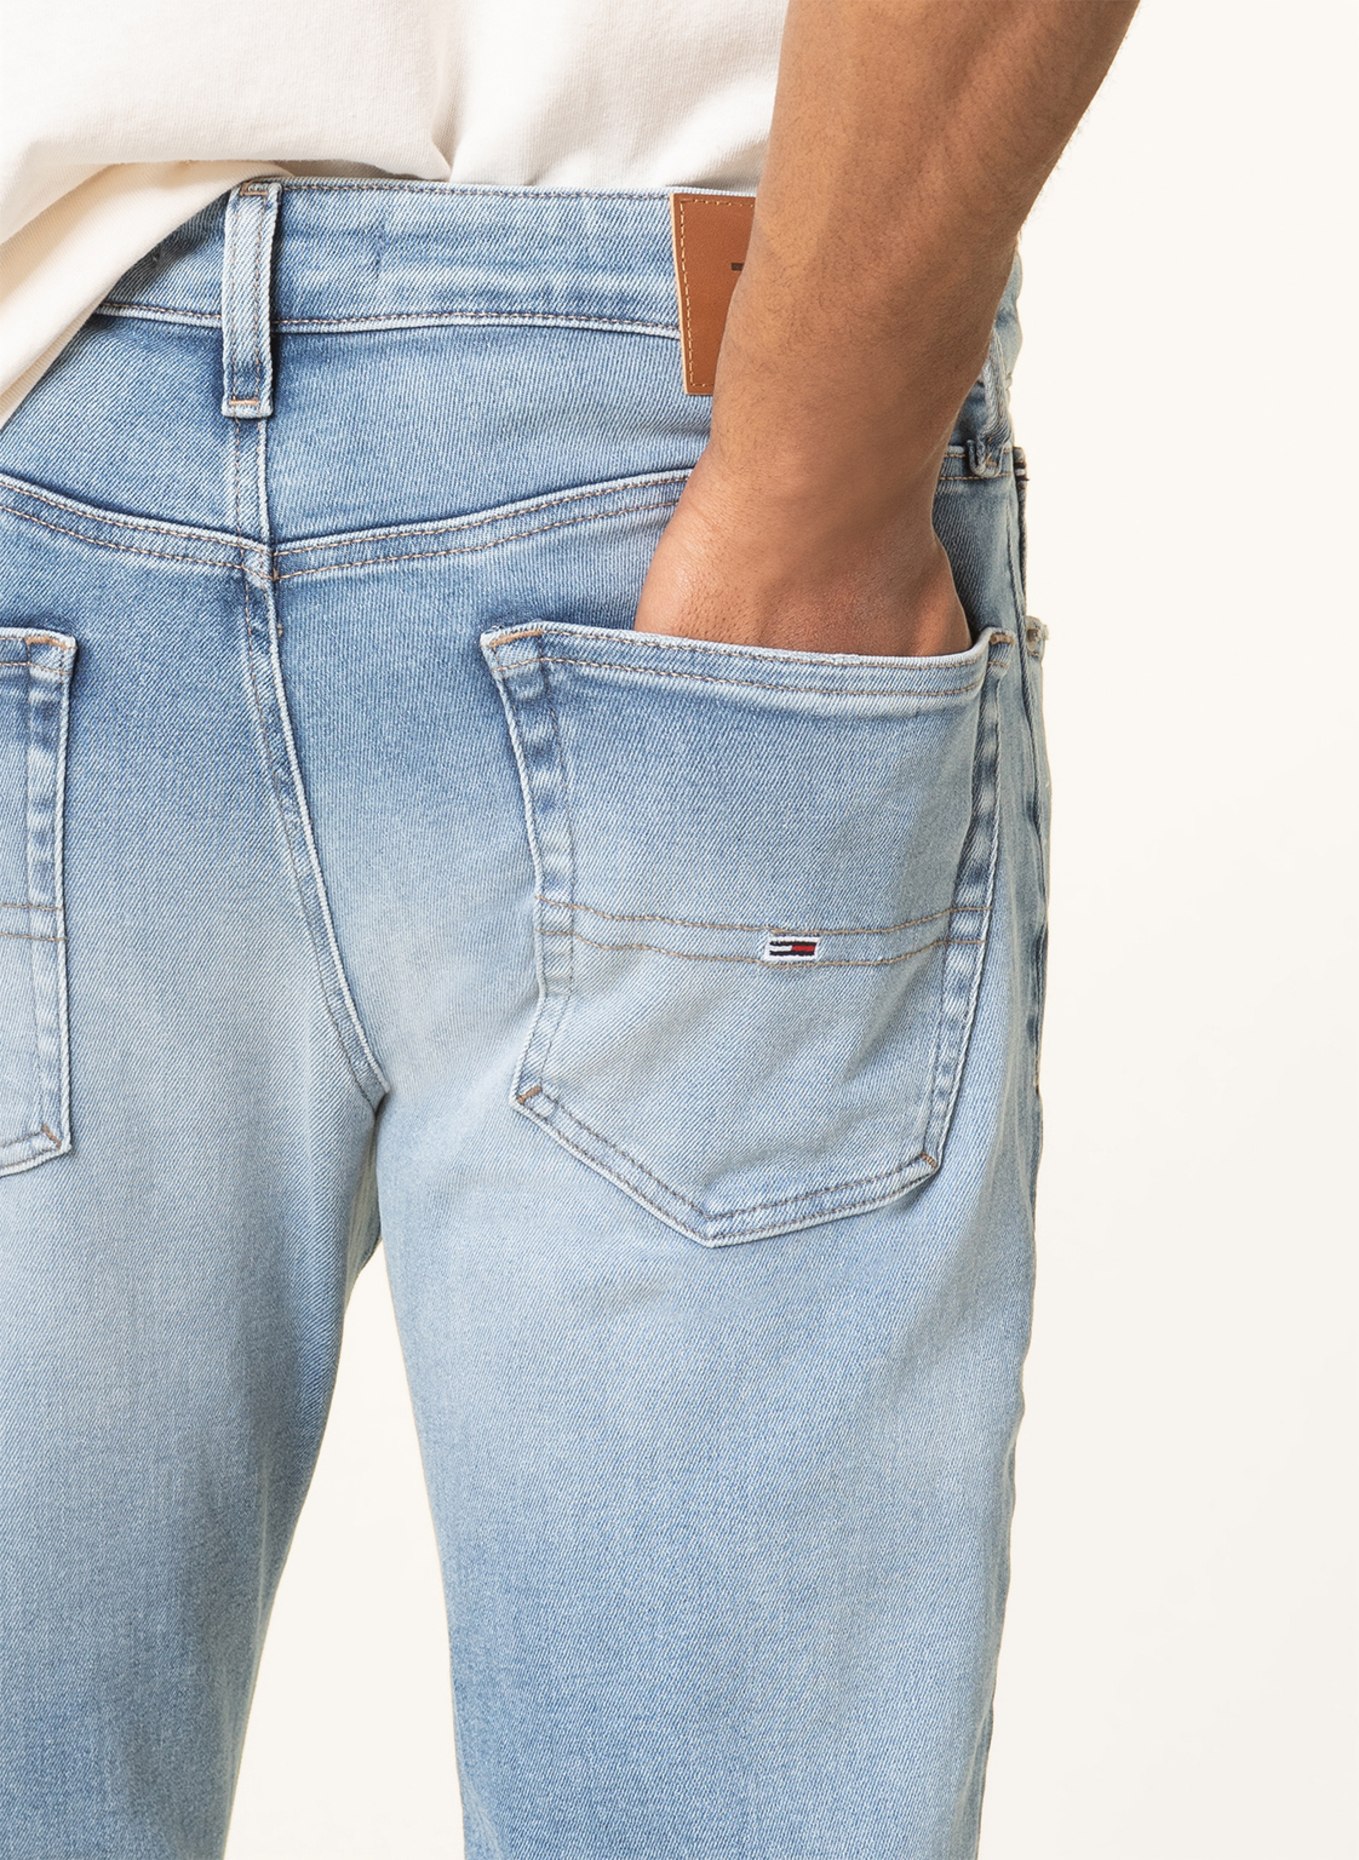 TOMMY JEANS Jeans AUSTIN slim tapered fit, Color: 1BK Denim Light (Image 5)